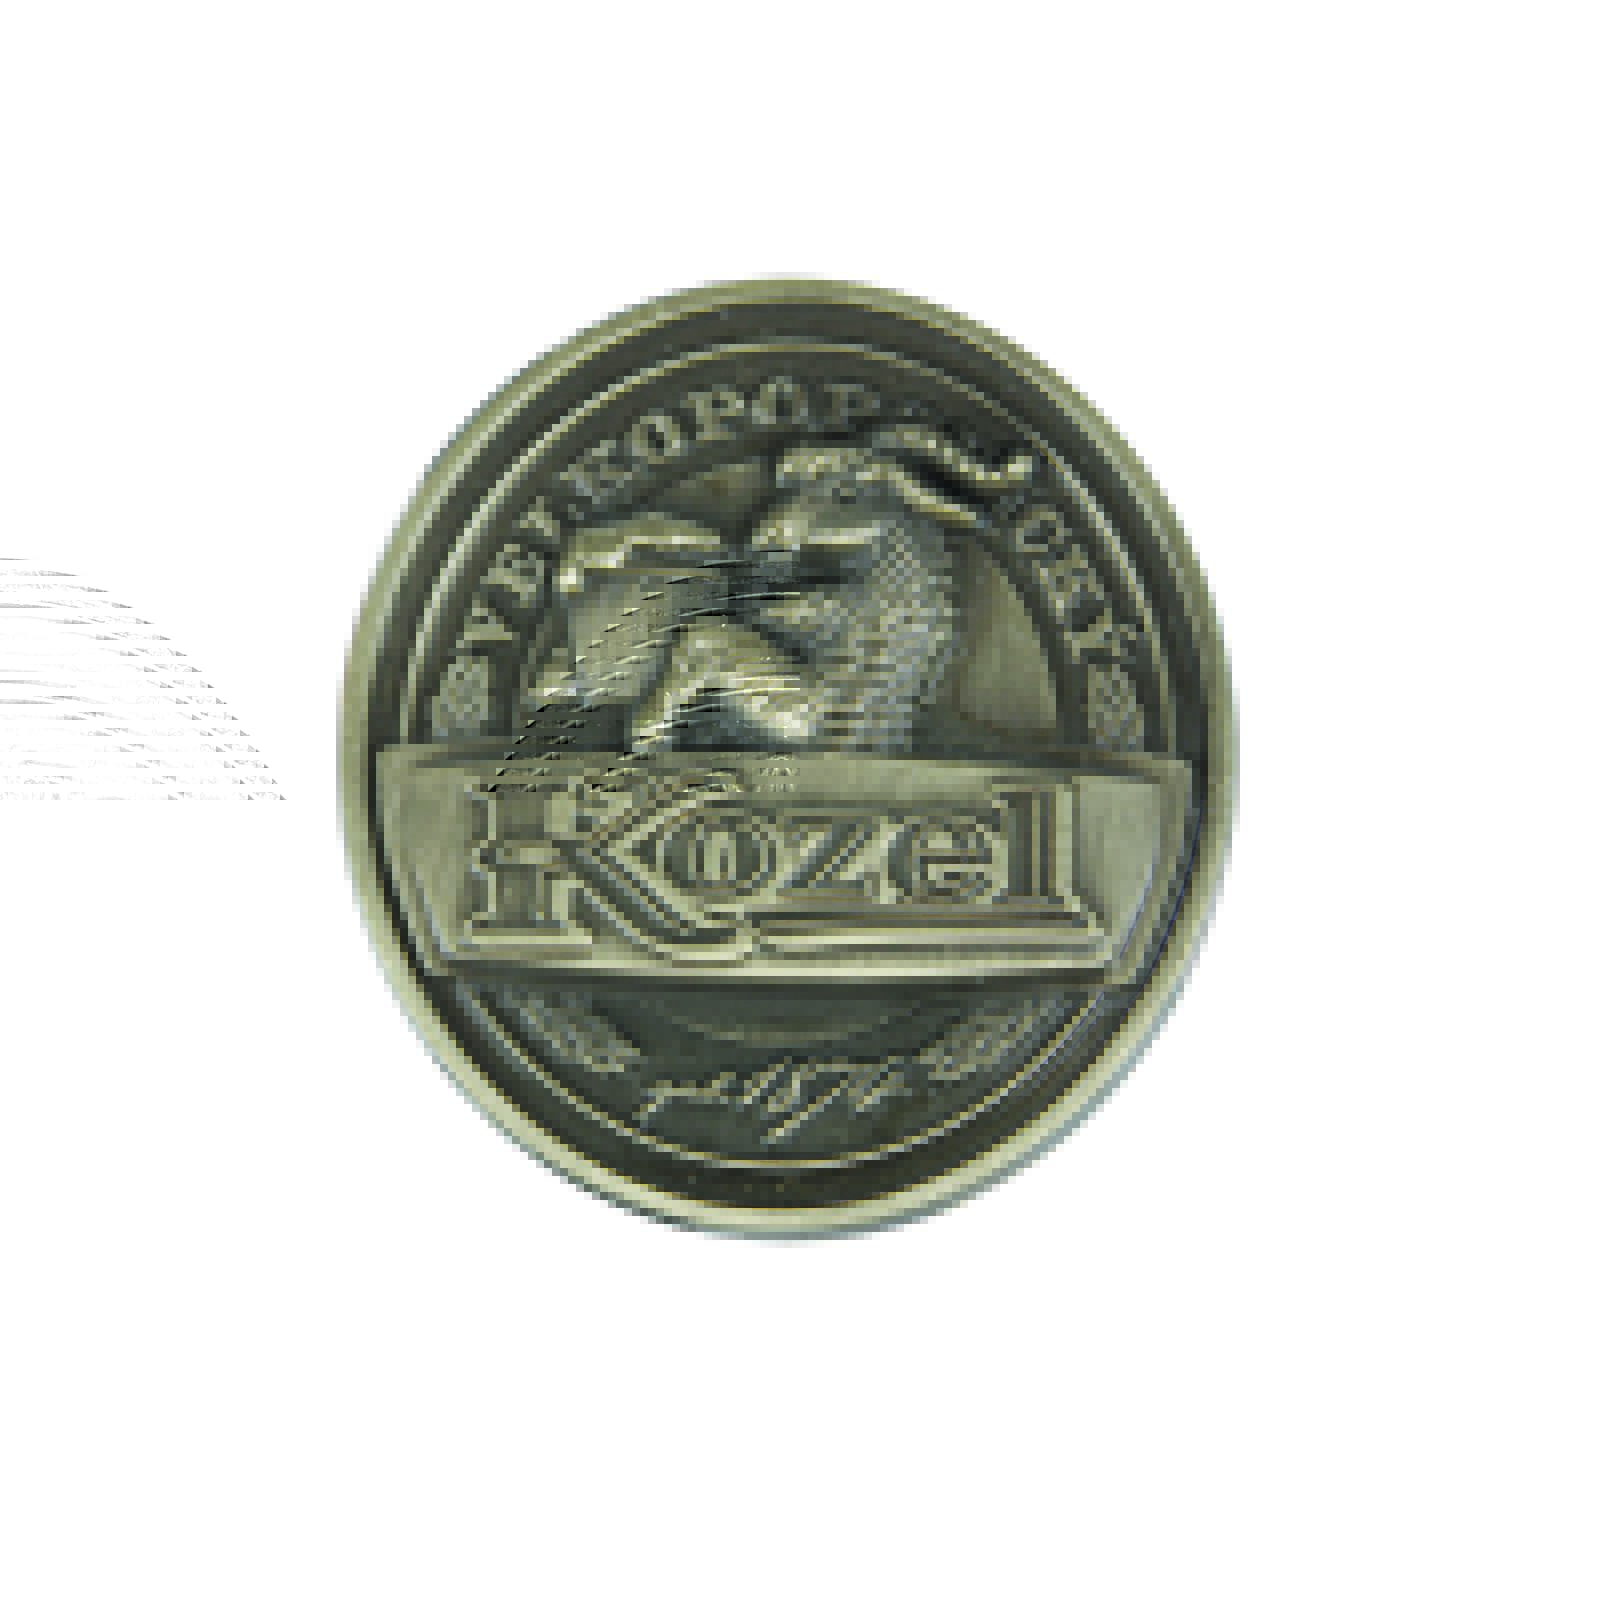 Kozel badge, gold